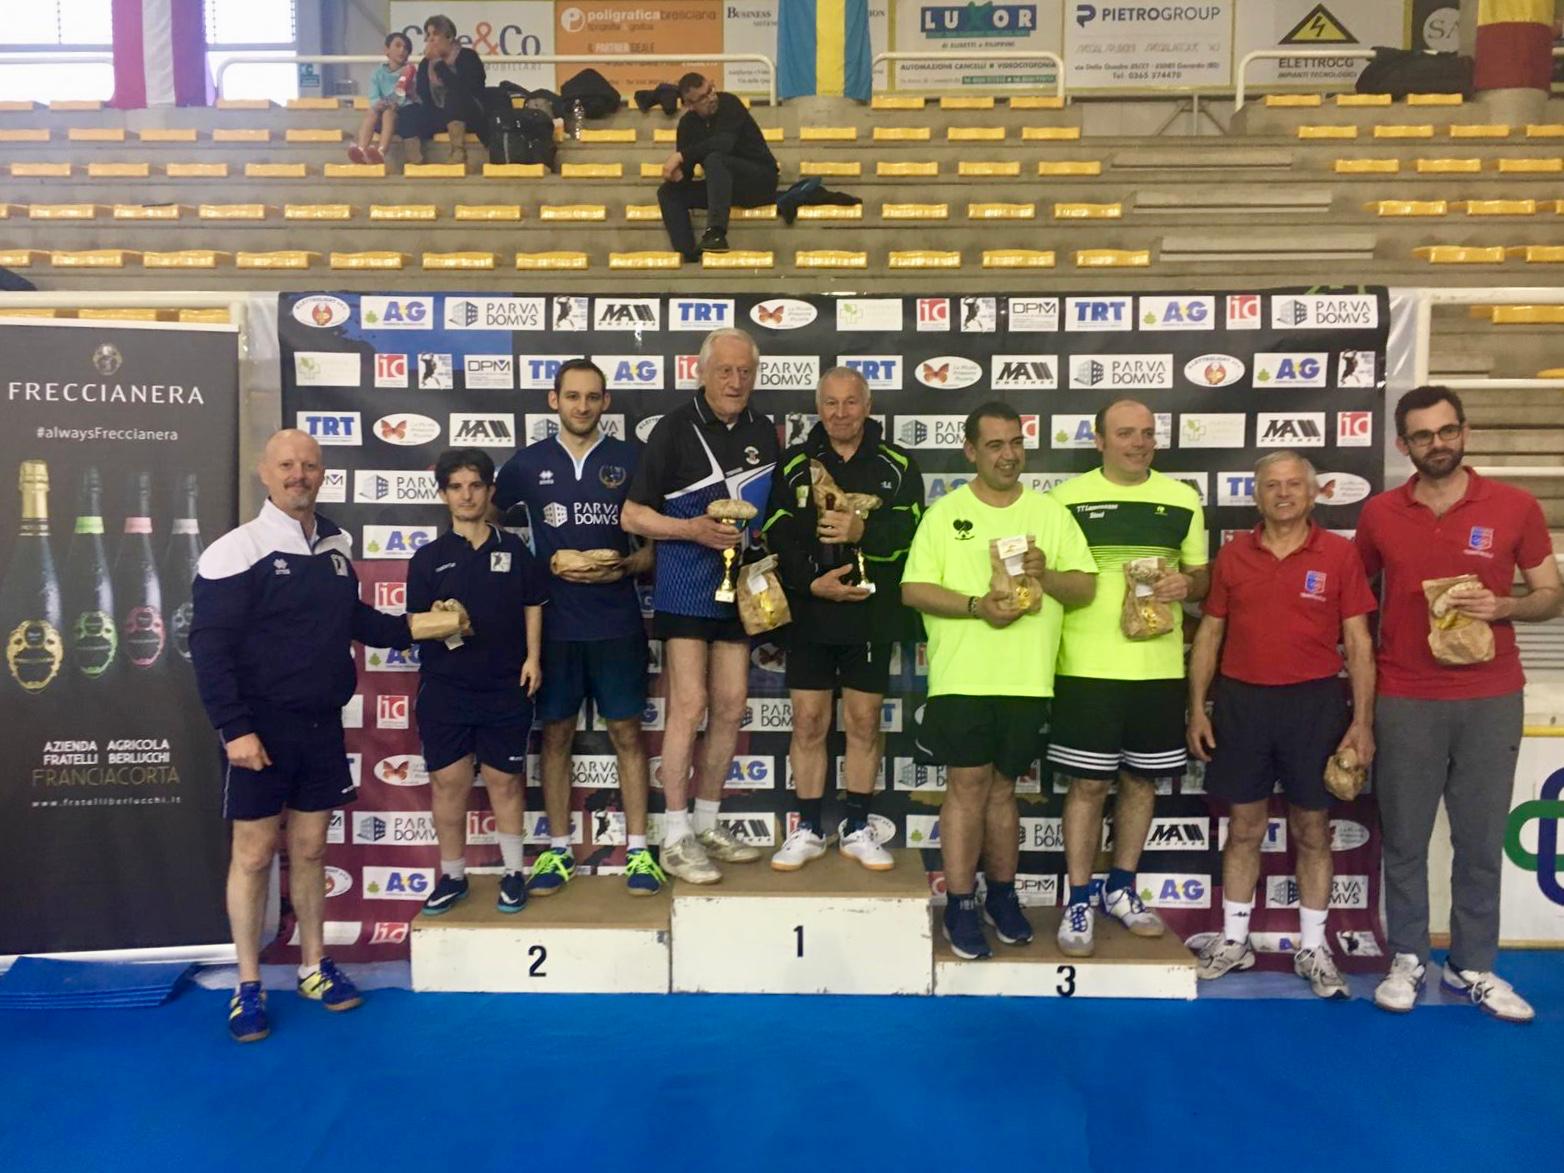 Il podio del doppio maschile VI categoria ai campionati regionali 2019